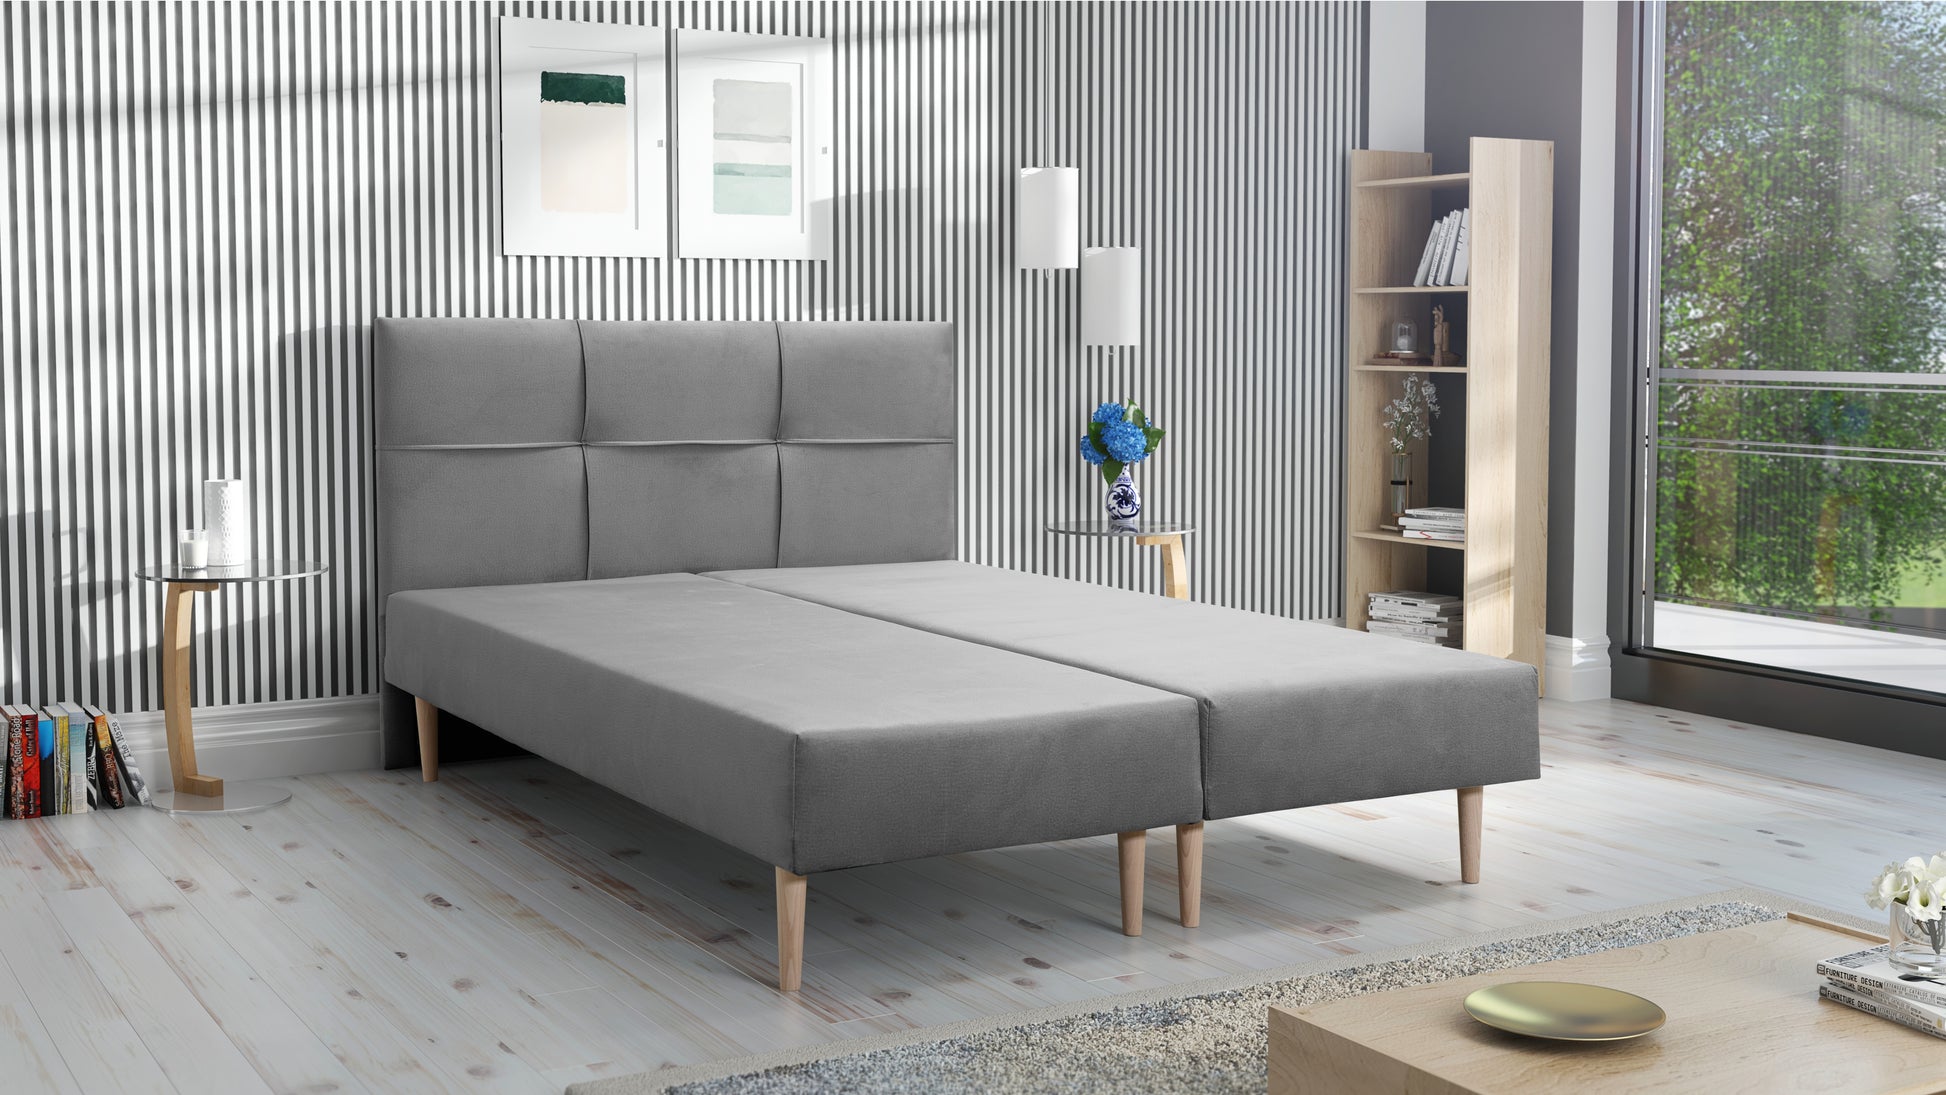 Zdjęcie przedstawiające przykładową aranżację: Tanie łóżko tapicerowane 140x200 z materacem ze sprężynami bonell. Tanie łóżko podwójne 140x200 dostępne w dmsm.pl taniej niż łóżko z materacem IKEA Jysk Agata Meble Bodzio Meble